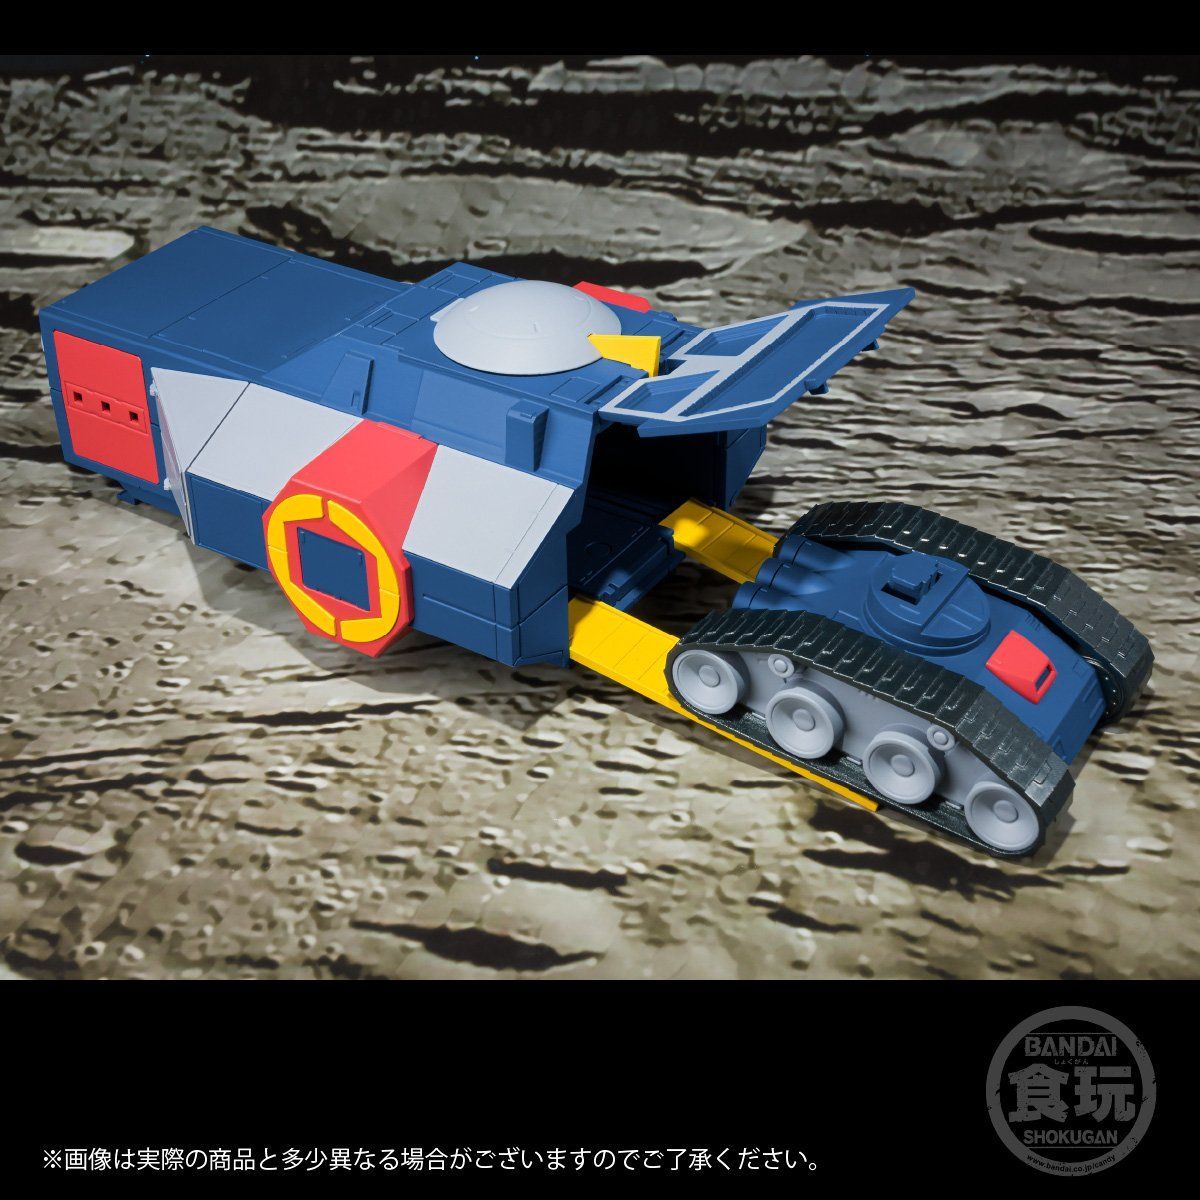 【食玩】スーパーミニプラ『無敵ロボ トライダーG7』3個入りBOX-016